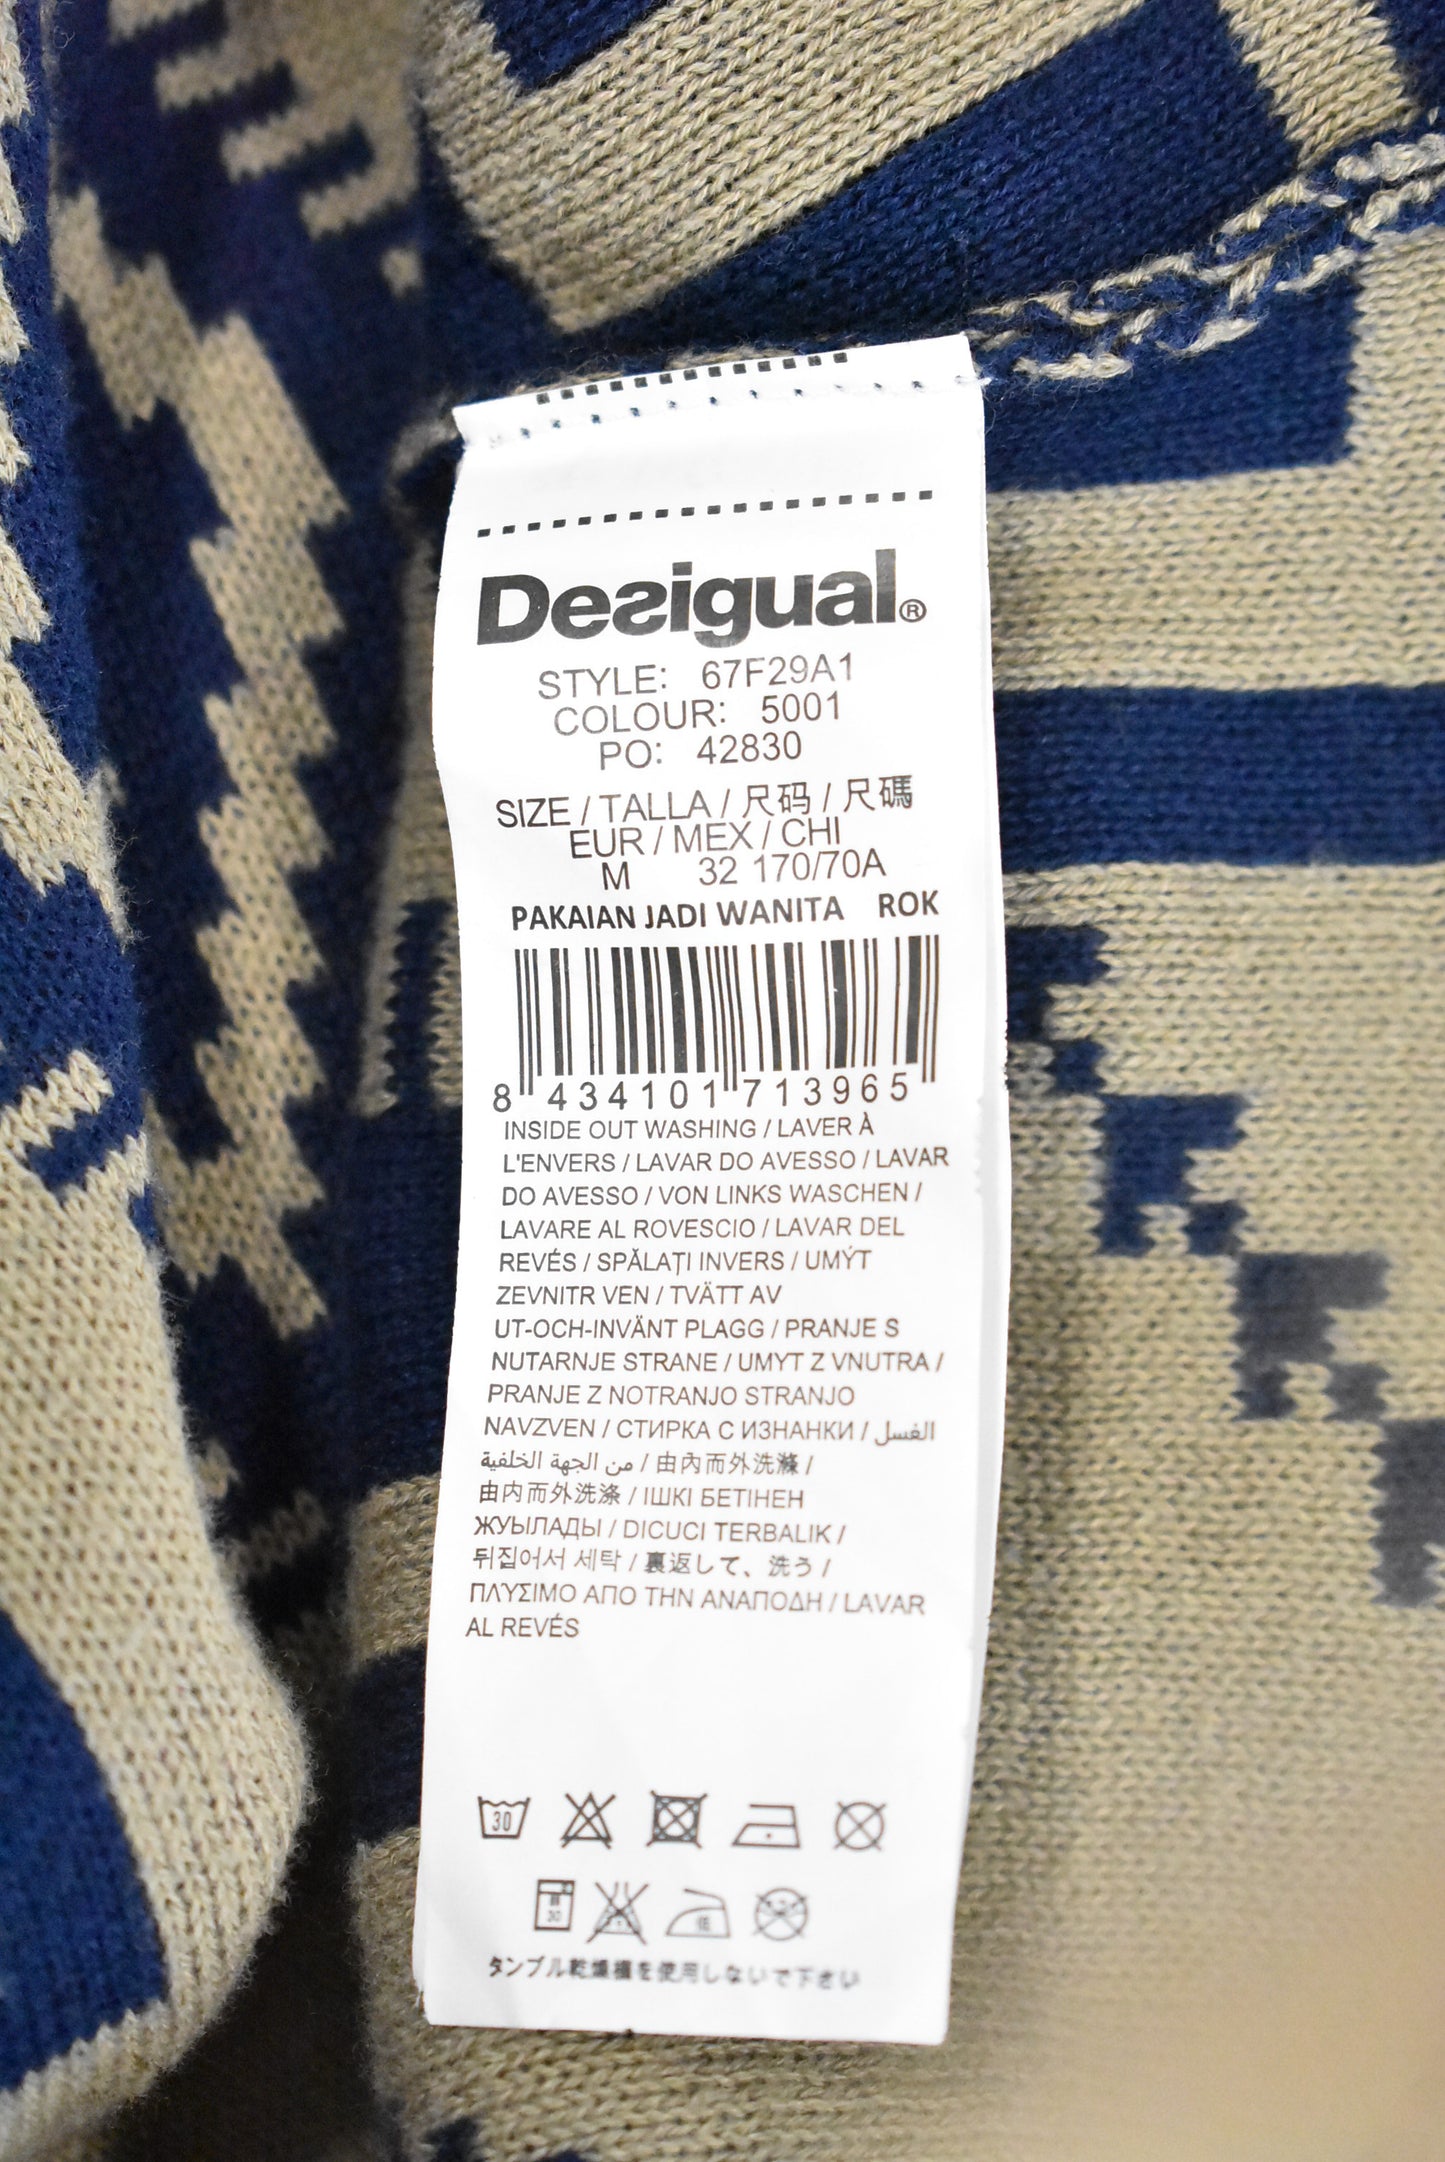 Desigual A-line cotton knit skirt, M